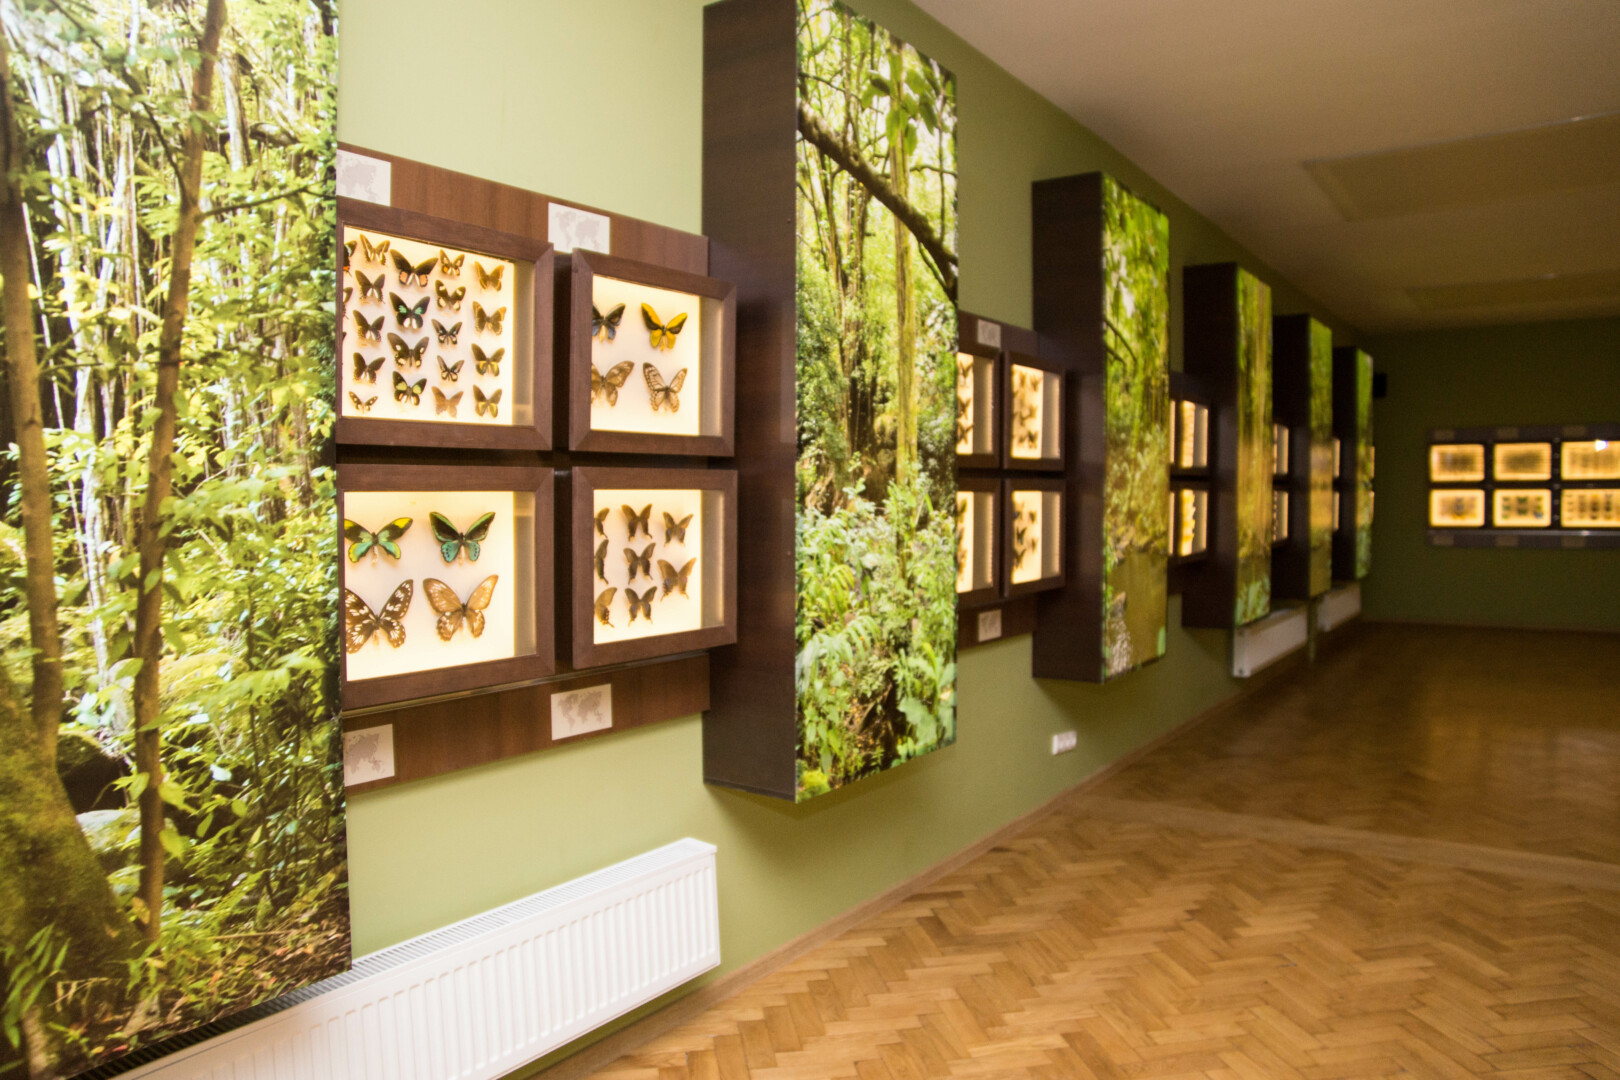 Garsiąją drugelių ir vabzdžių kolekciją muziejaus lankytojai paskutinį kartą matė 2018-aisiais. Nuo tada šis miesto turtas paslėptas saugyklose. „SEKUNDĖS“ ARCHYVO nuotr. 